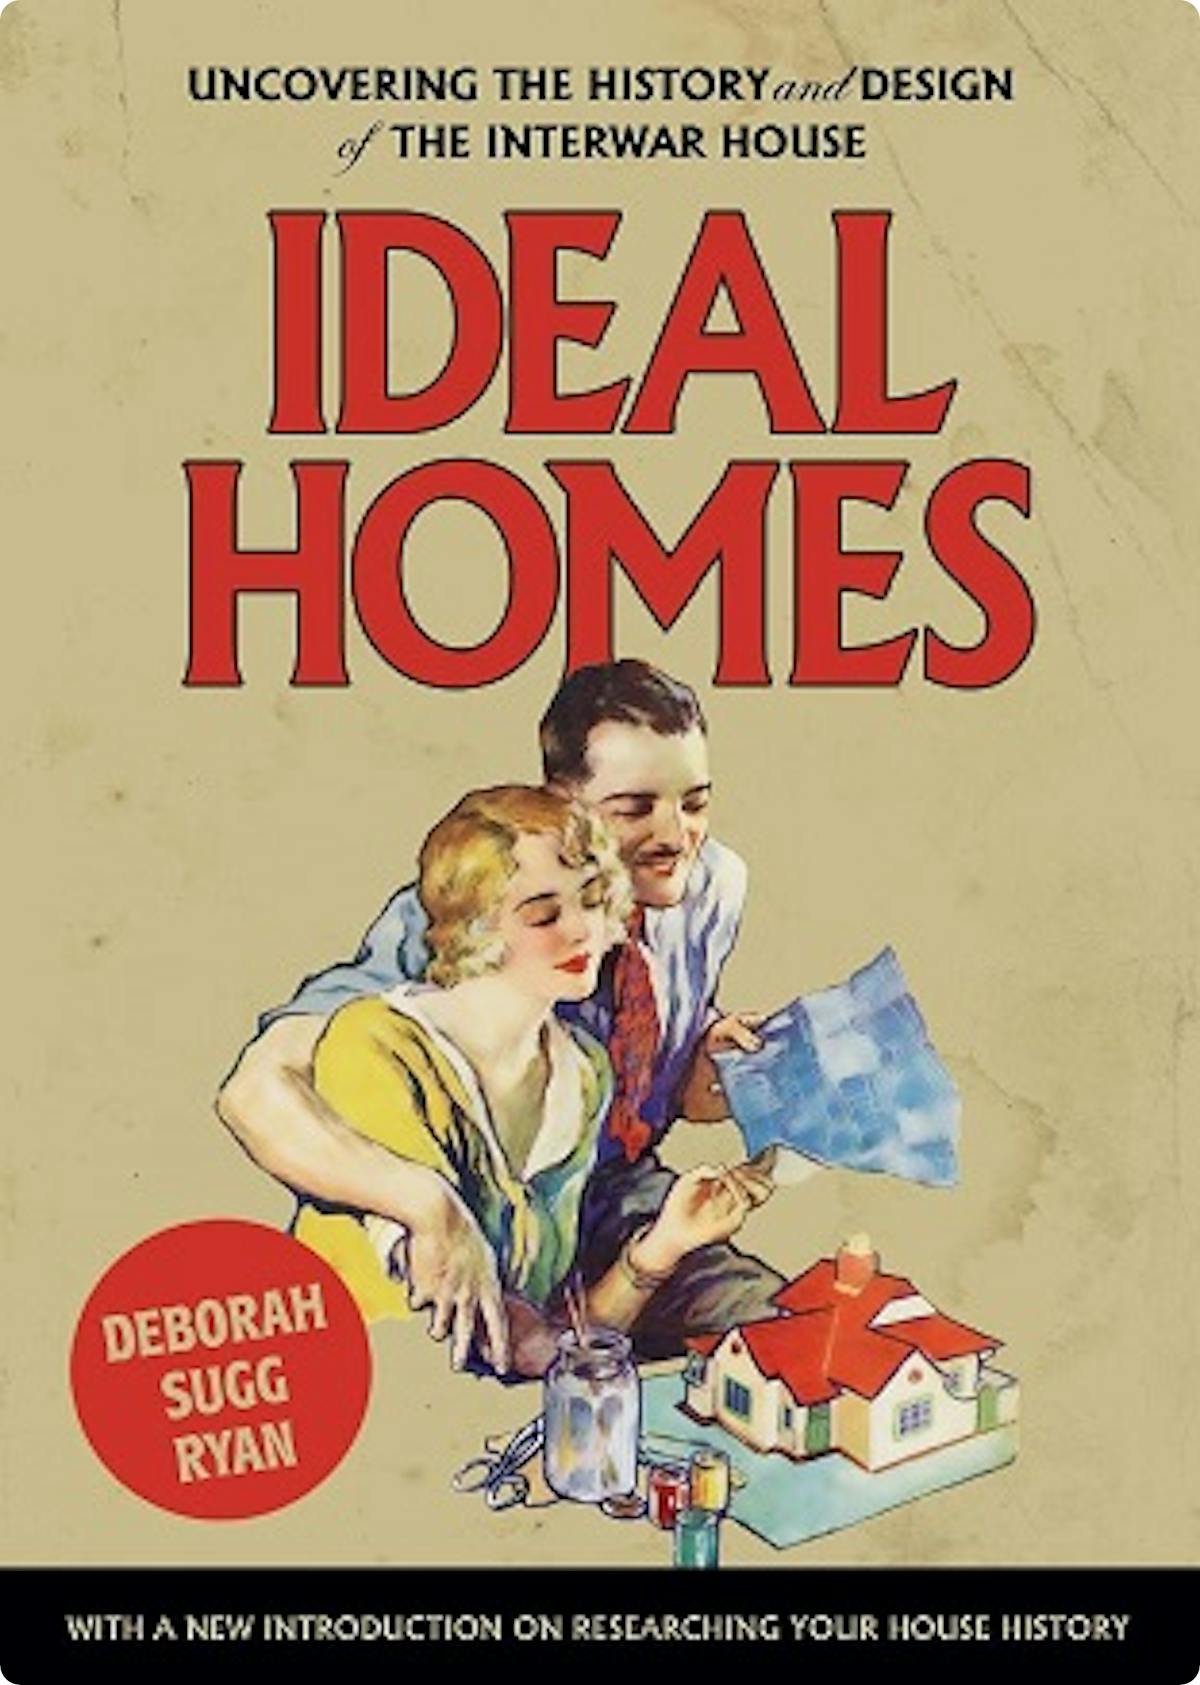 Ideal Homes by Deborah Sugg Ryan